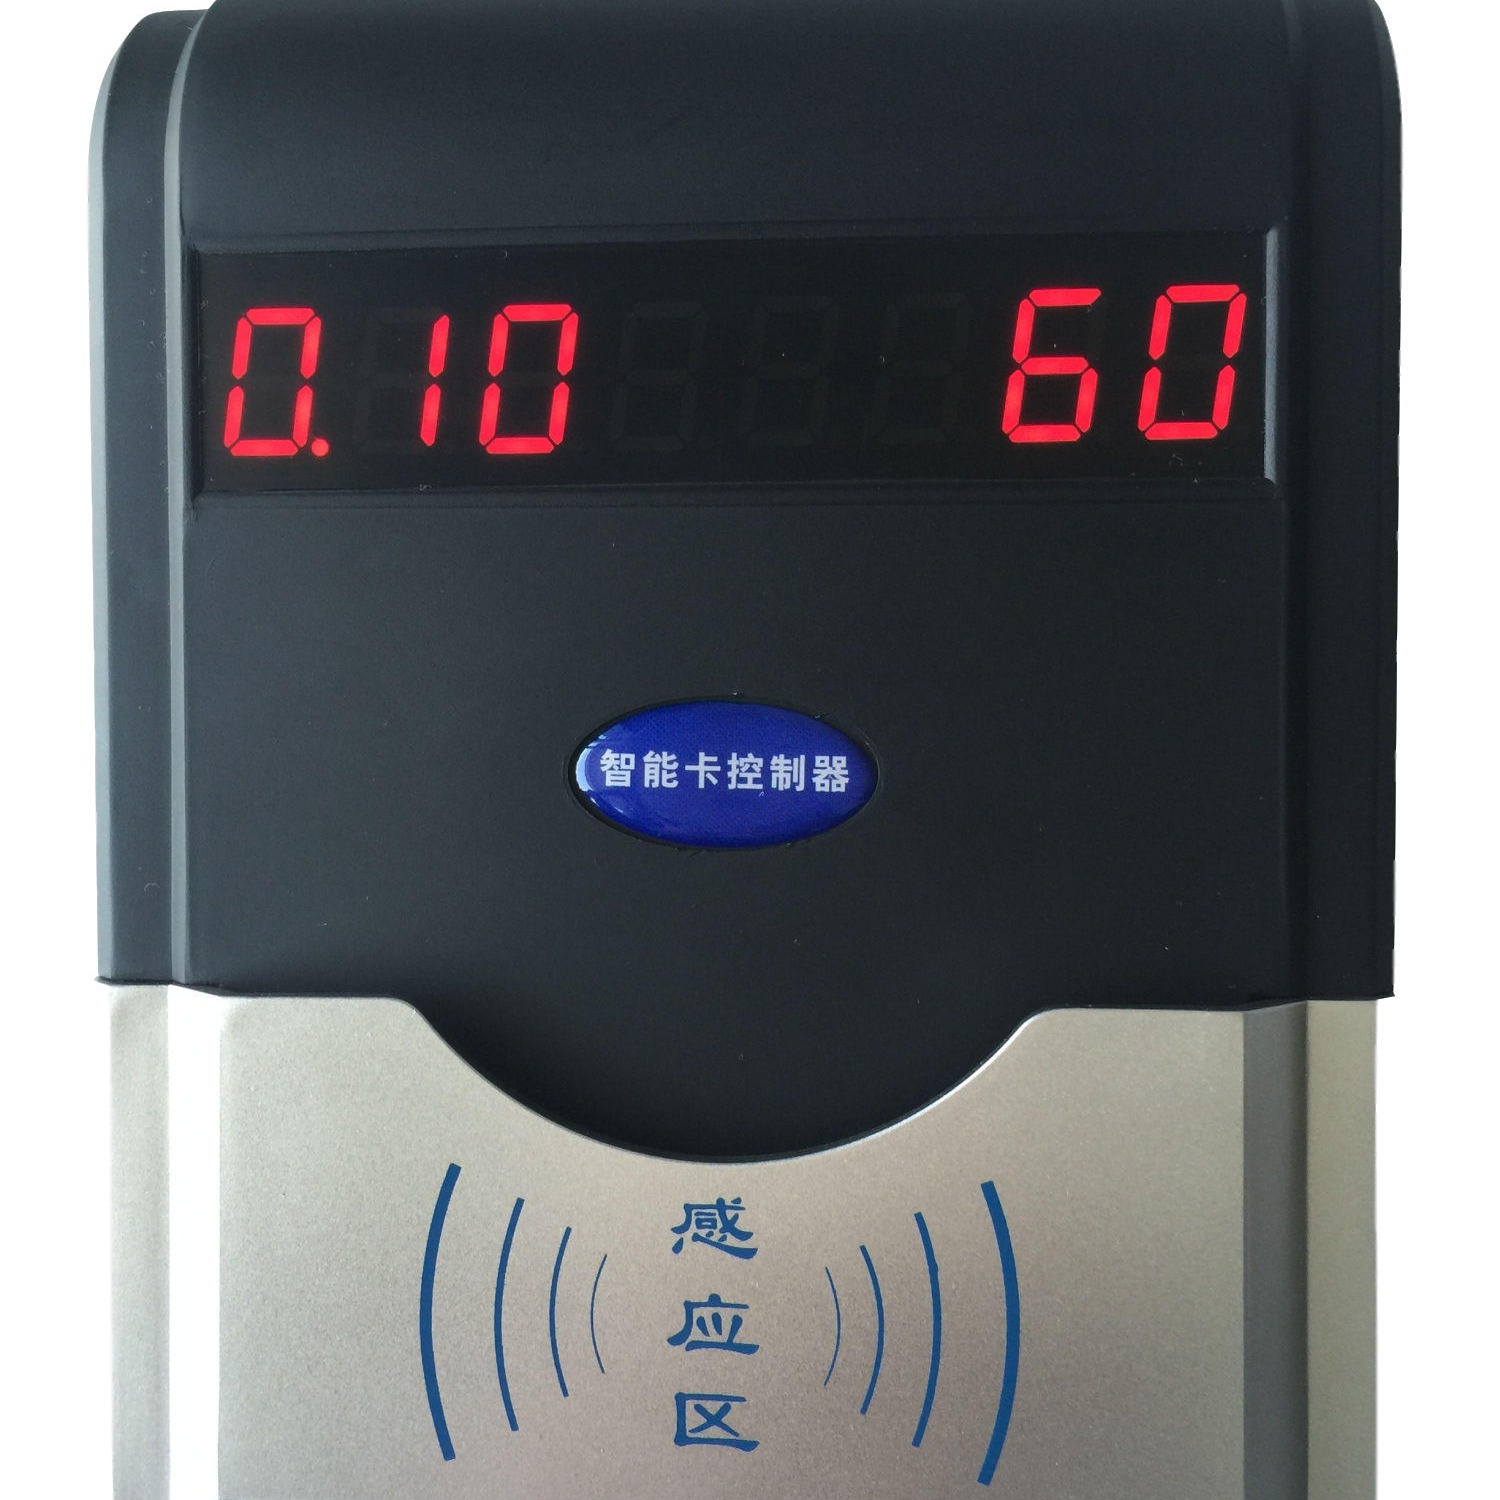 兴天下HF-660智能水控机/智能水控系统/智能水控节水机